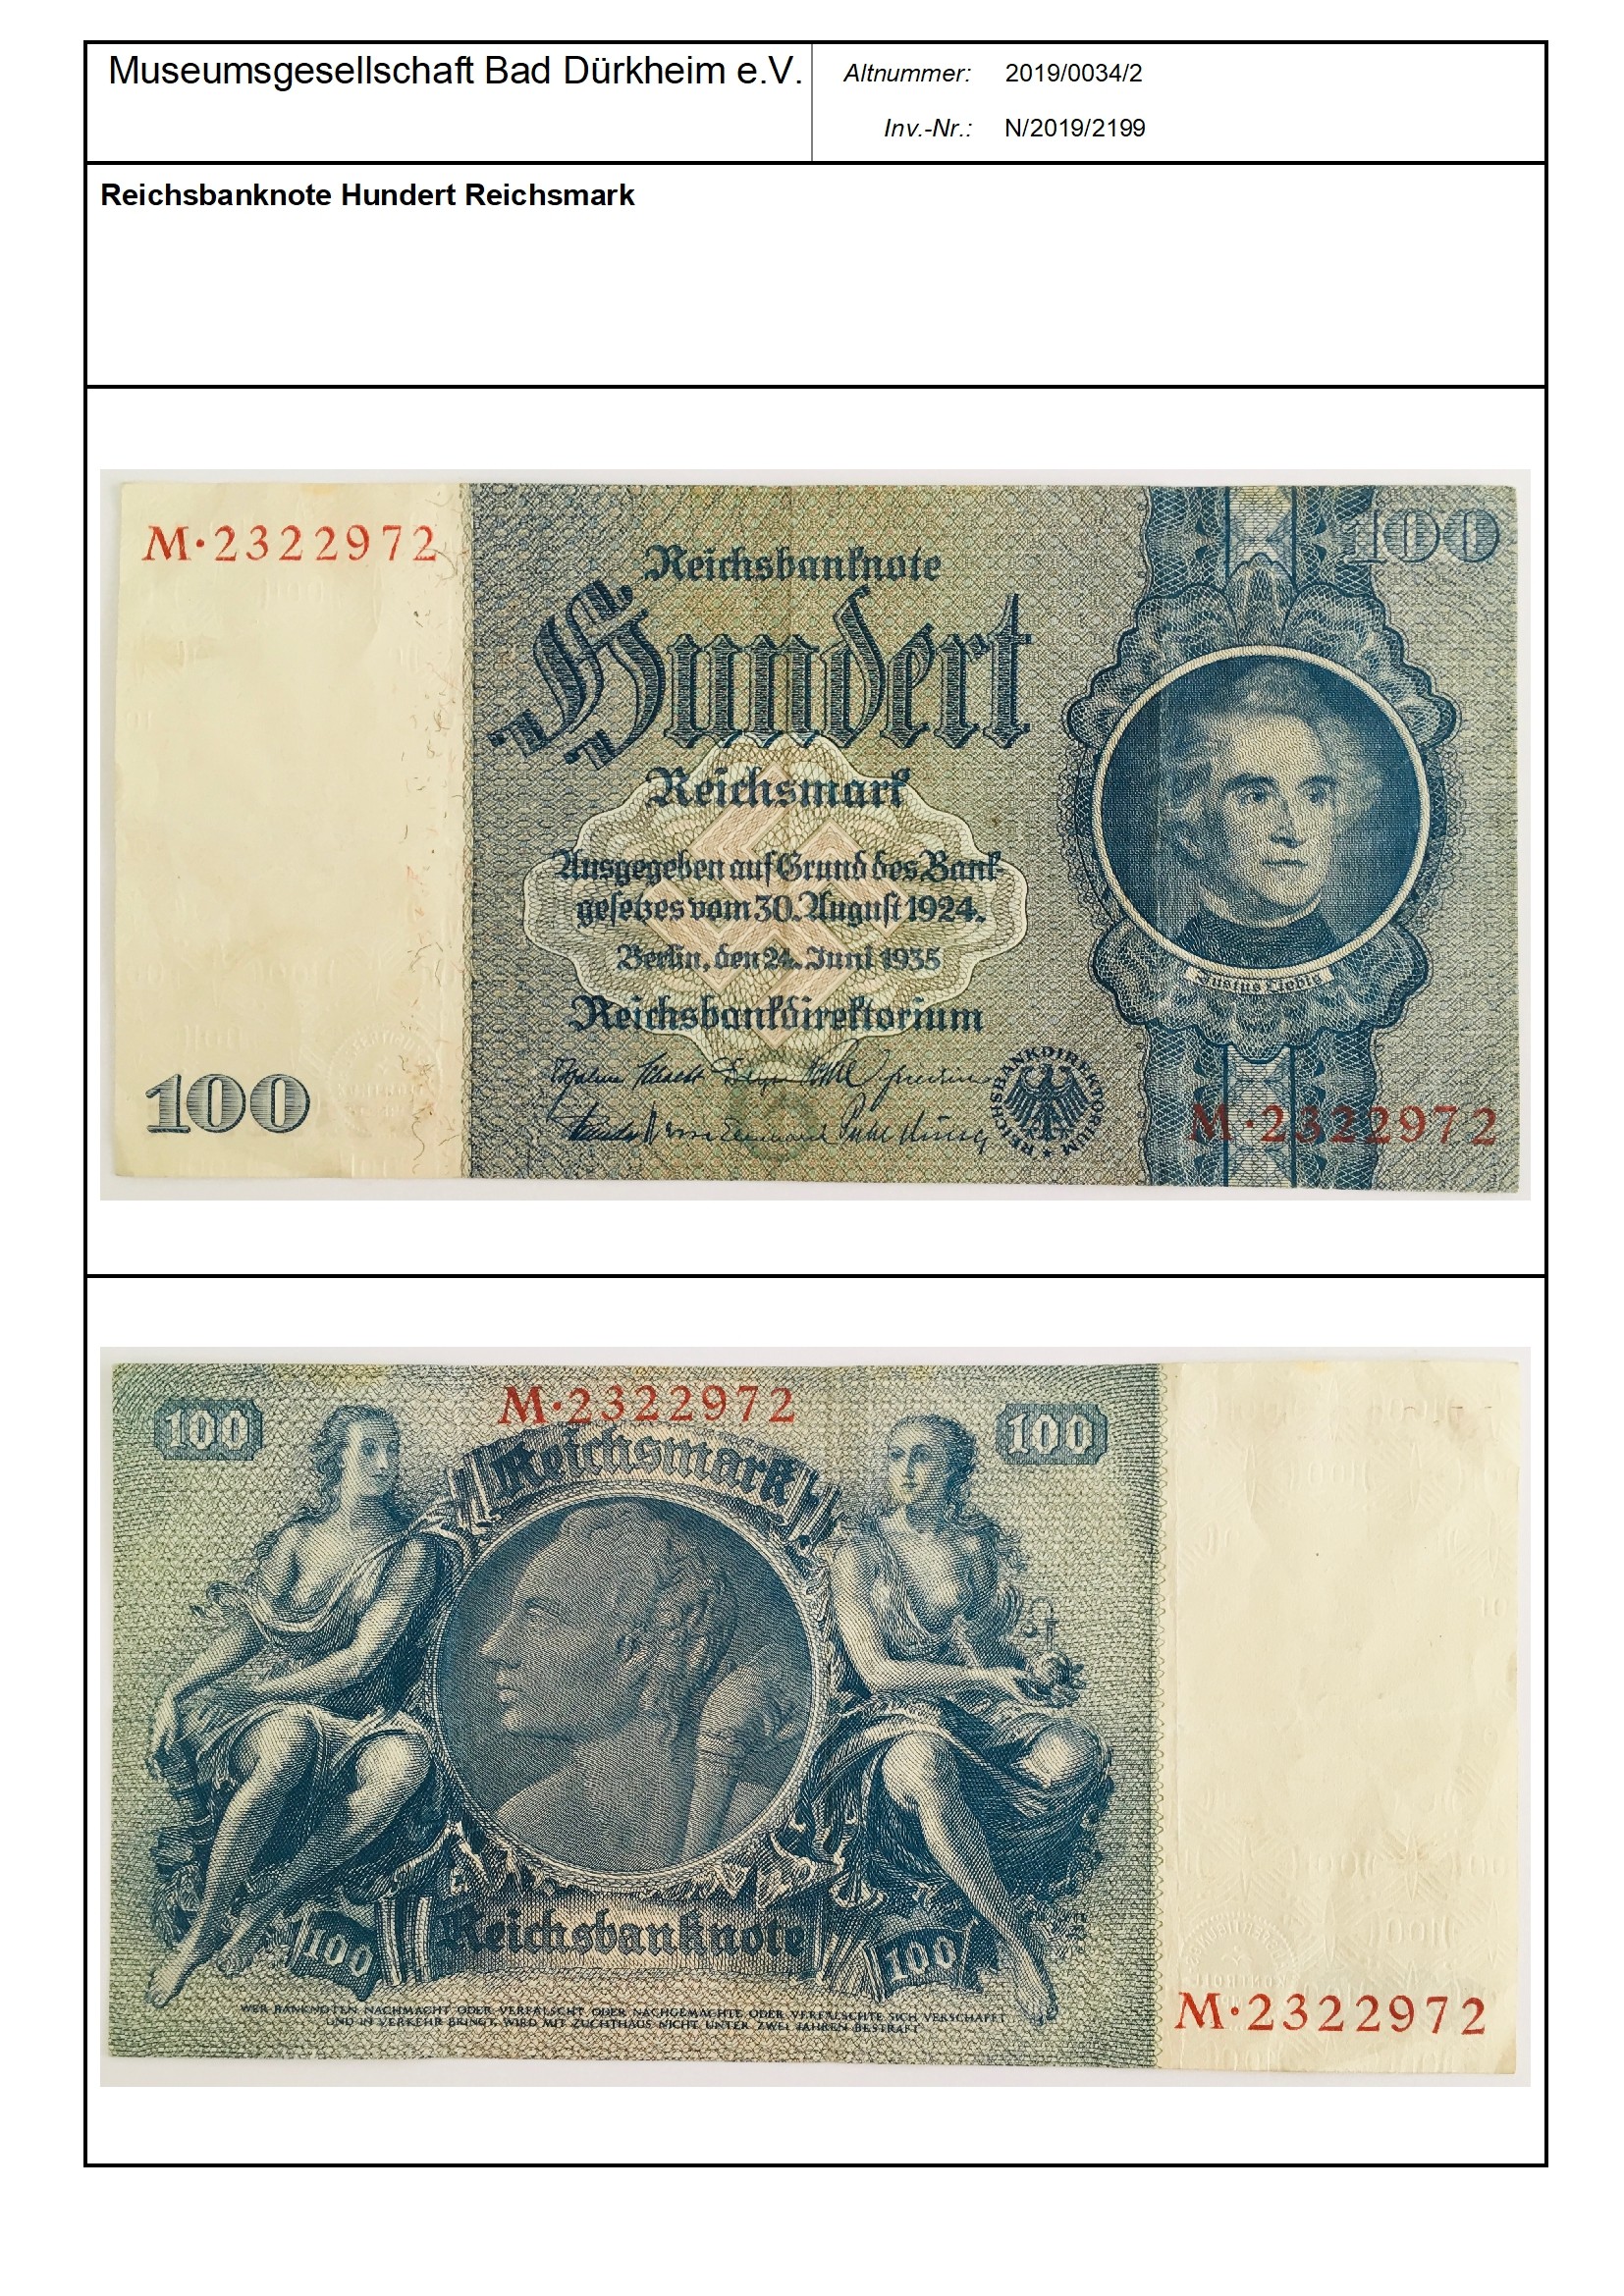 Reichsbanknote Hundert Reichsmark
Serien-Nummer: M*2322972 (Museumsgesellschaft Bad Dürkheim e.V. CC BY-NC-SA)